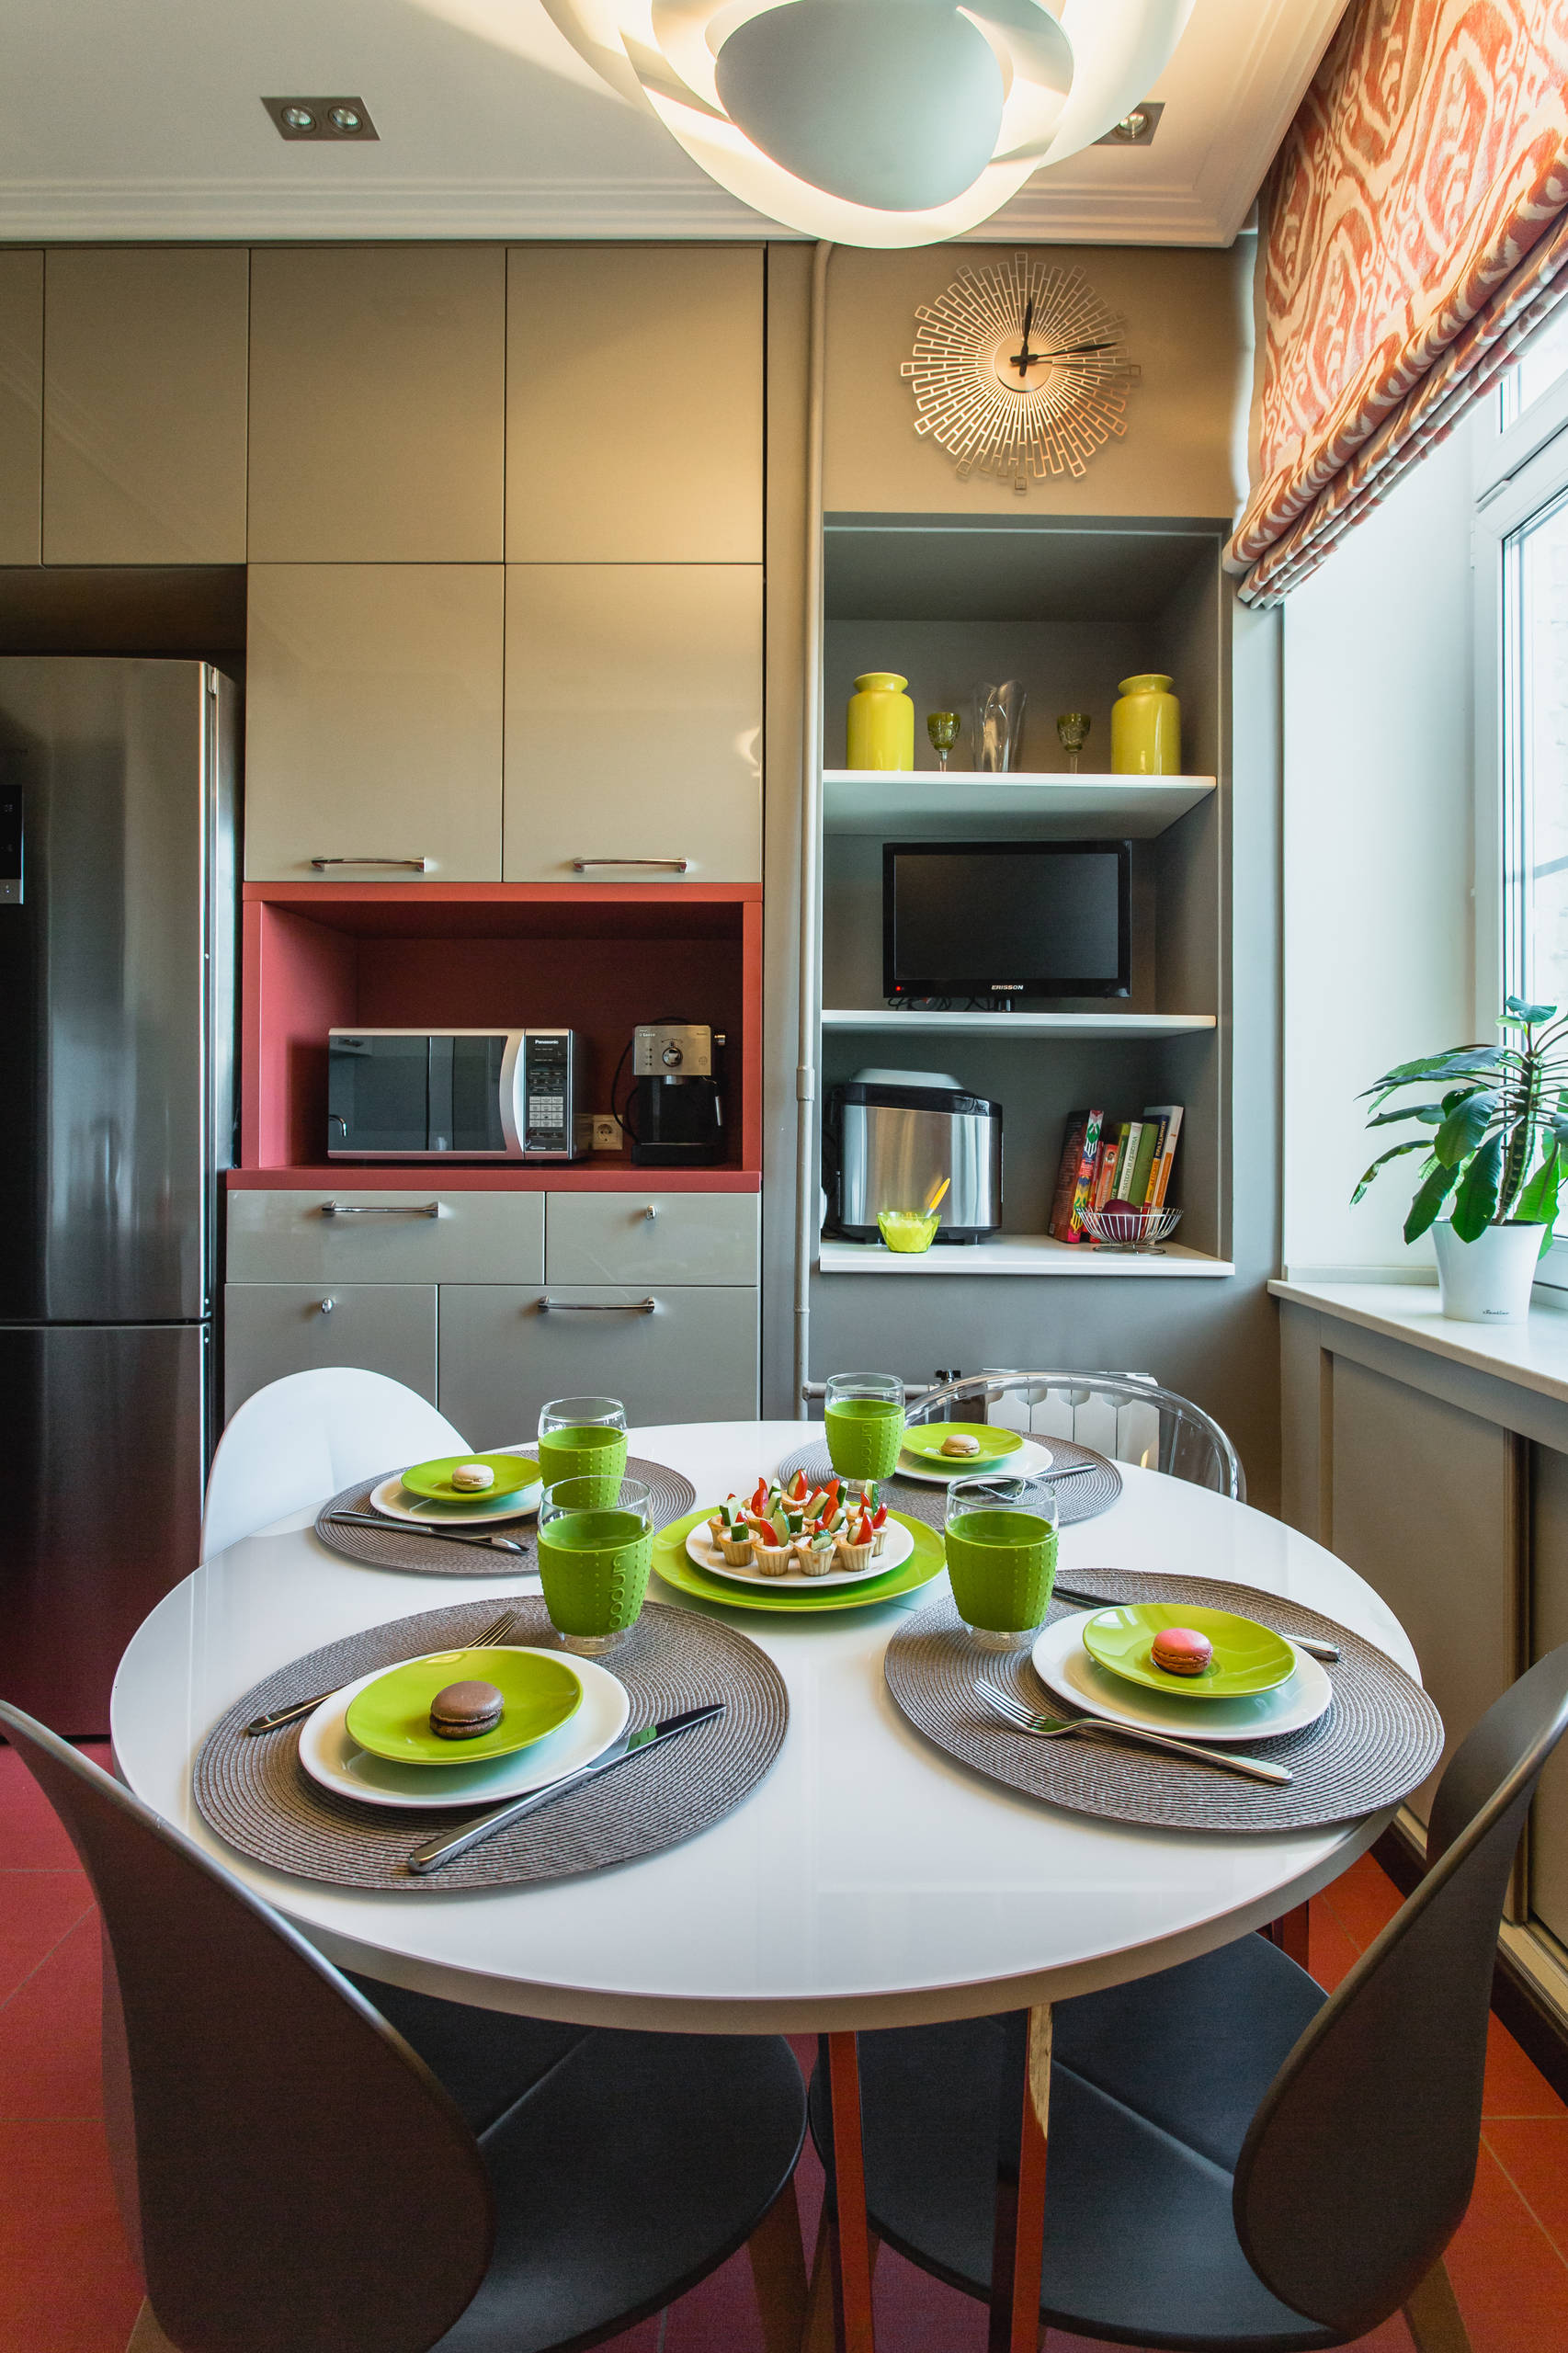 Проект современной встроенной кухни для кухни 9 кв.м (в панельном доме)